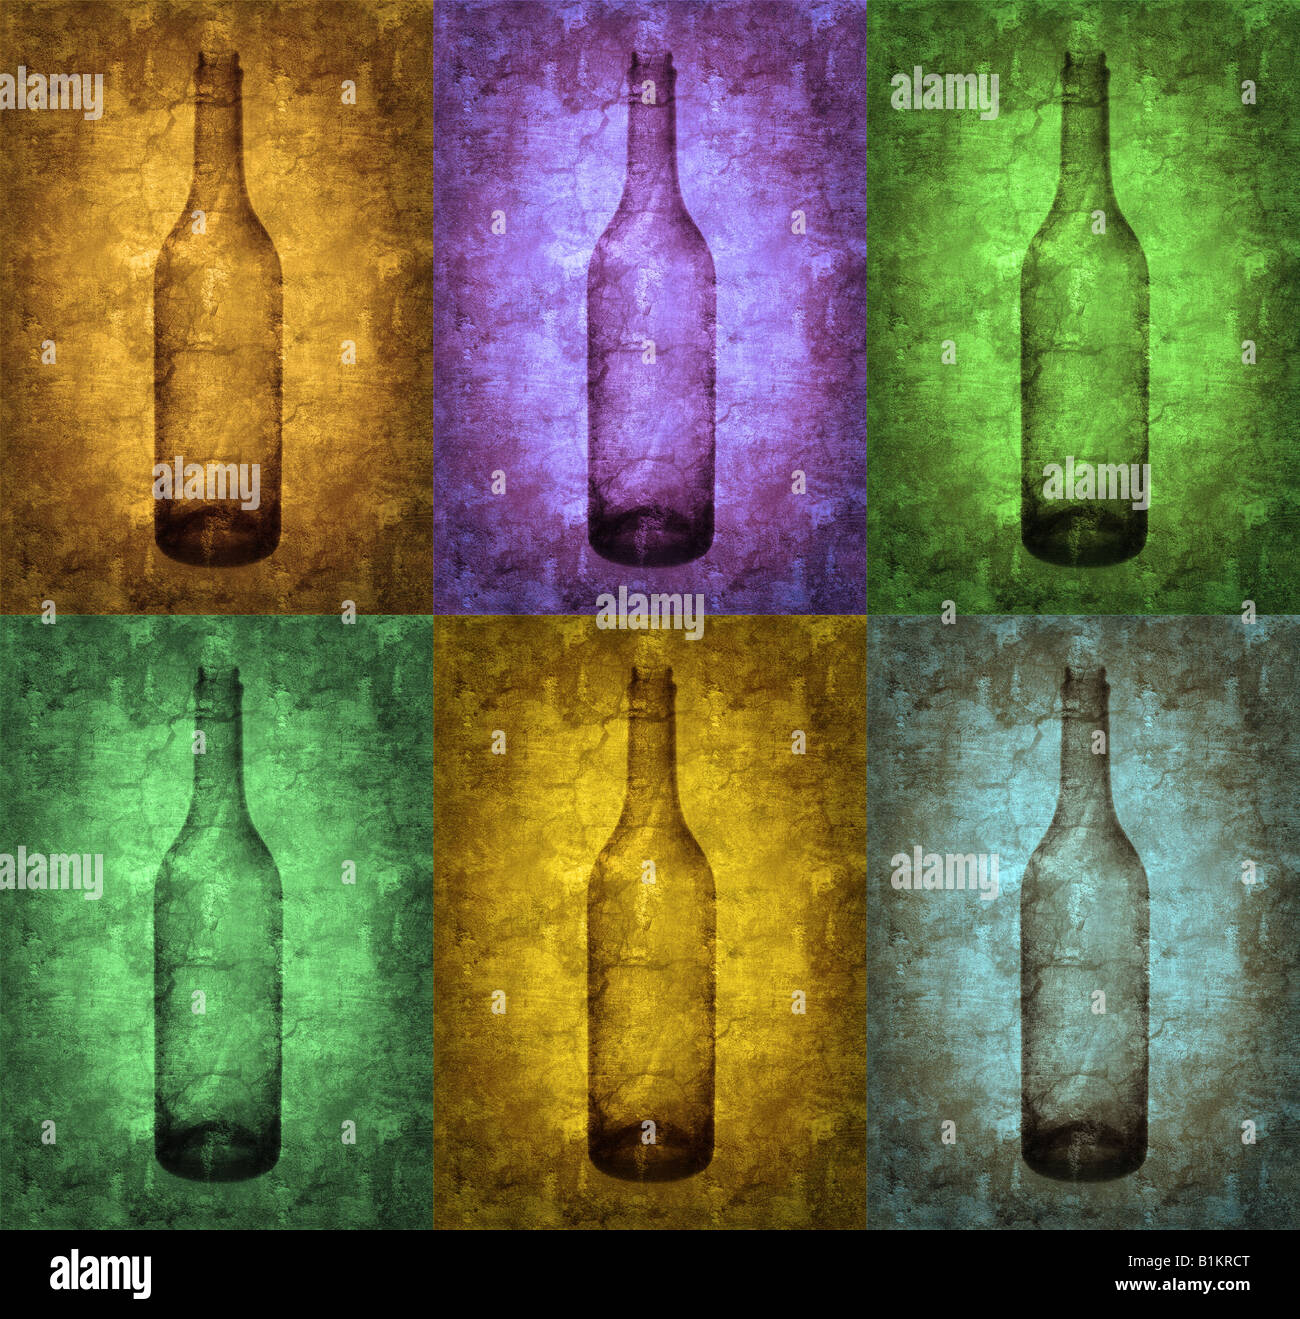 Grunge illustrazione con bottiglie, vintage stilizzata Foto Stock